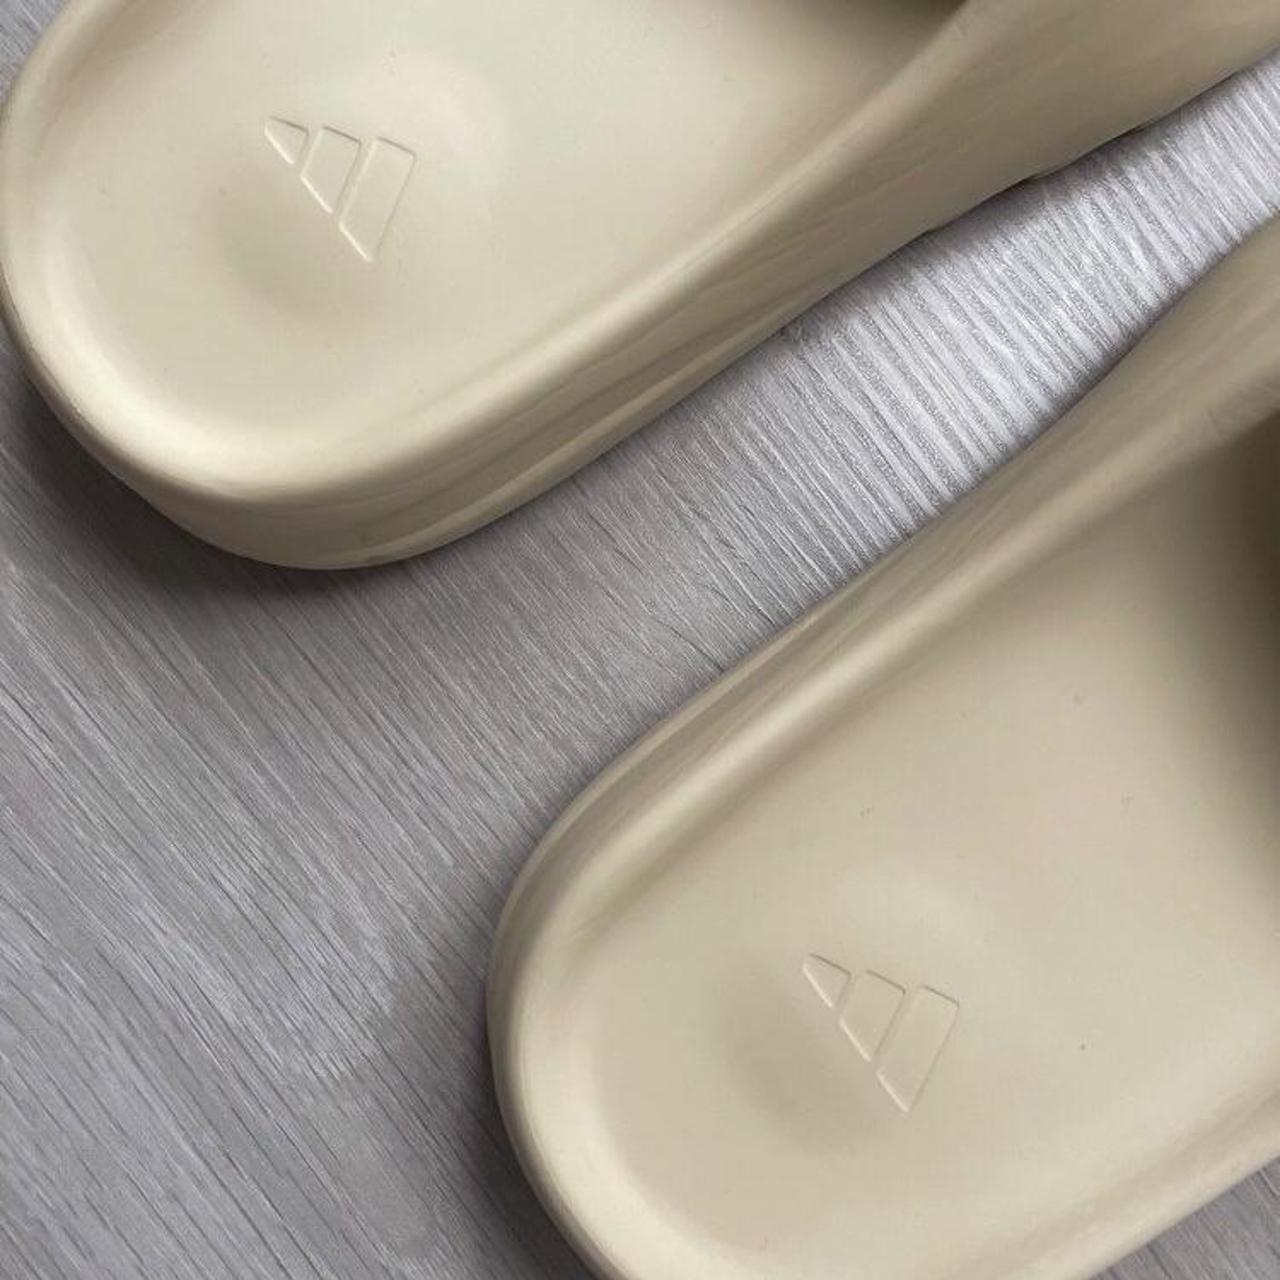 Product Image 2 - Adidas Yeezy Slides ‘Bone’ 
Size